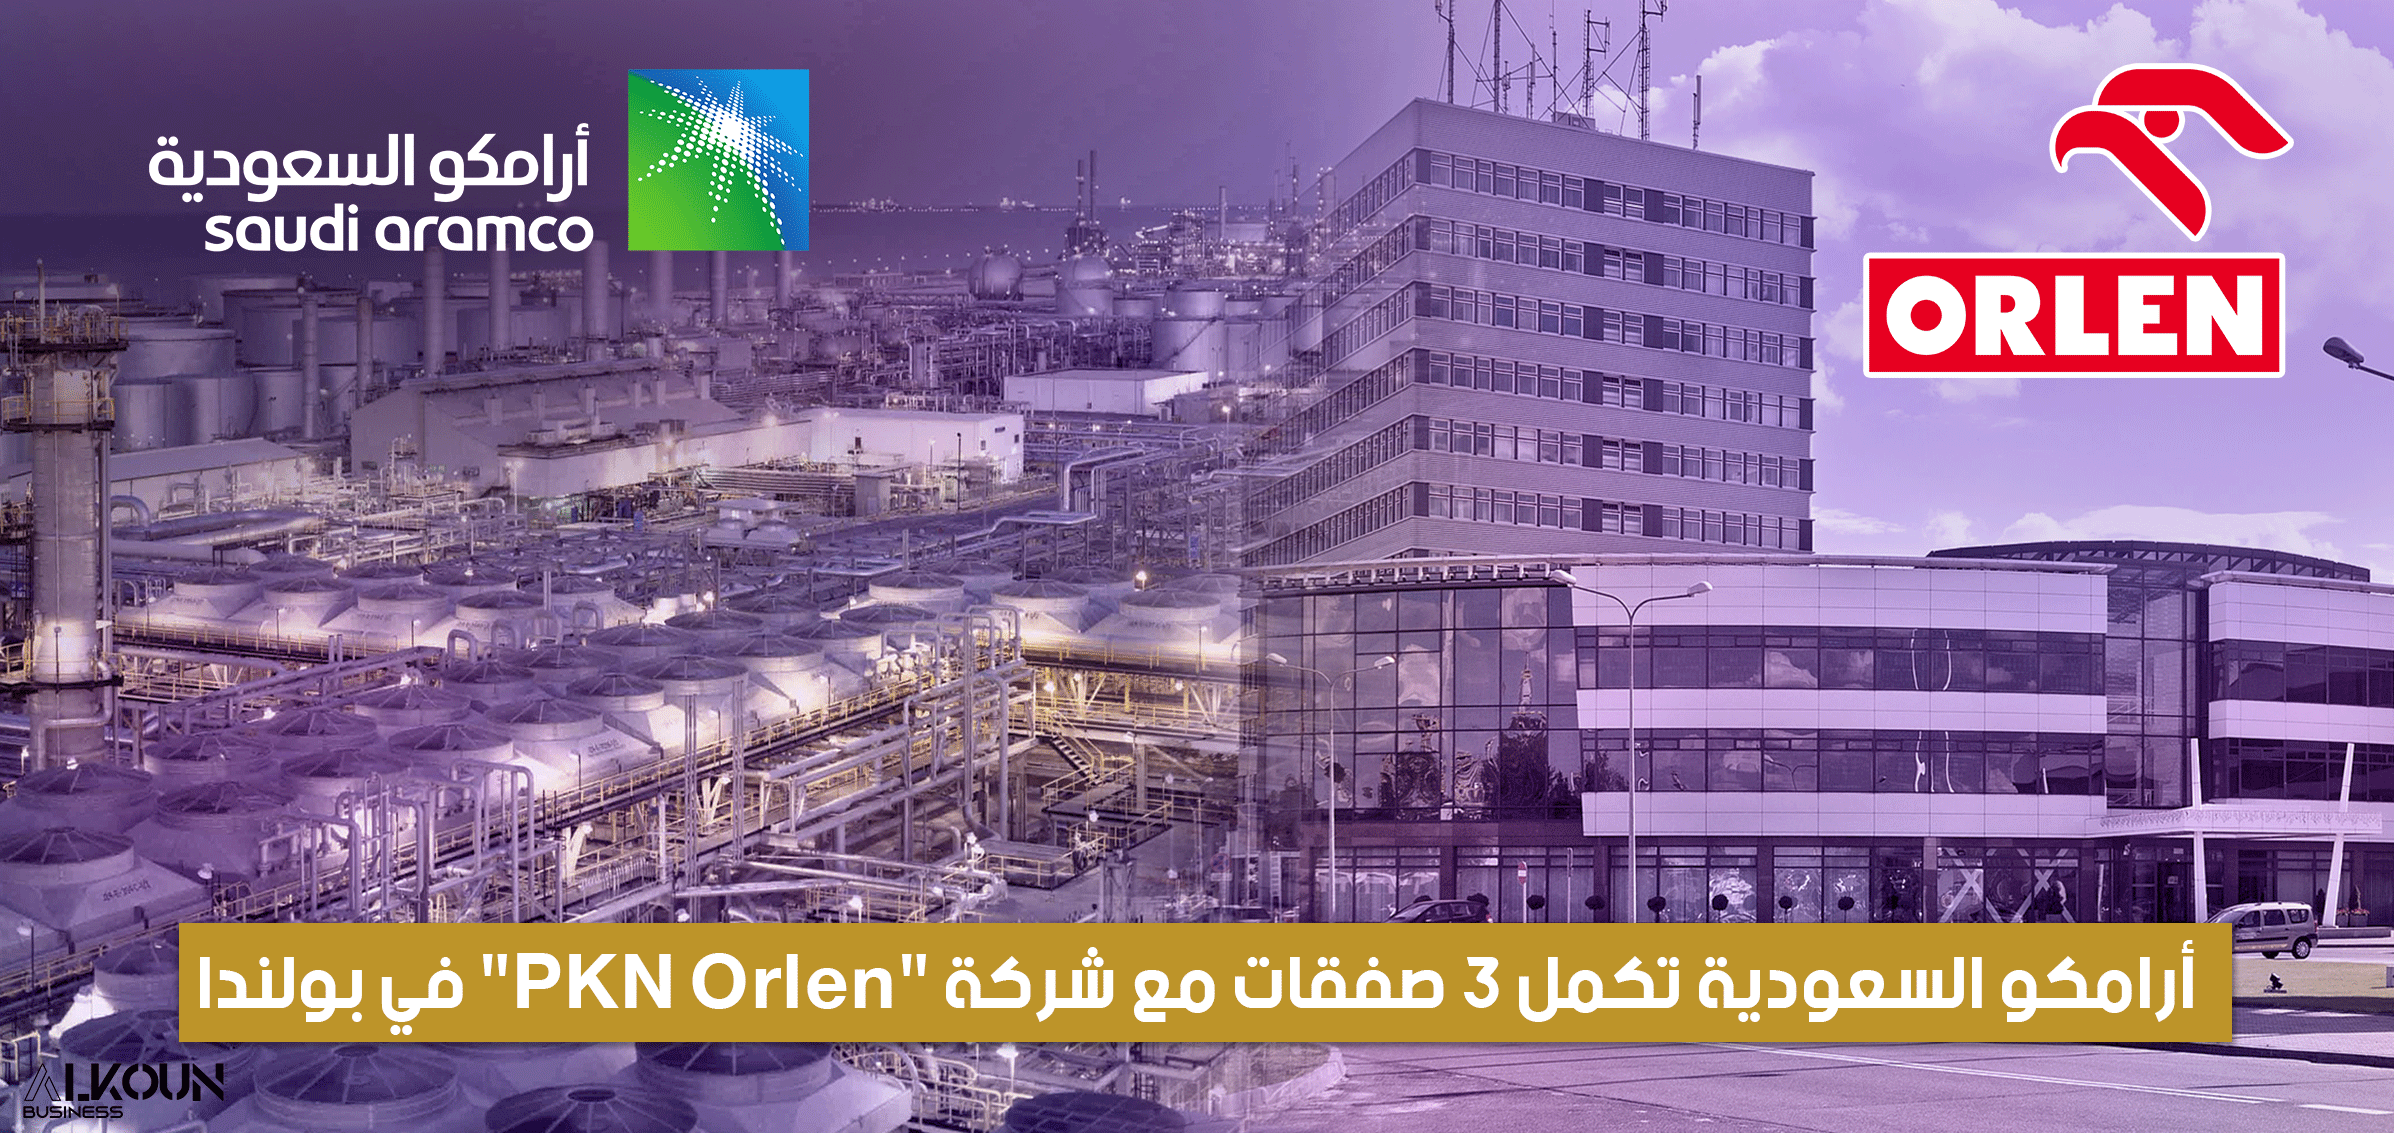 أرامكو السعودية تكمل 3 صفقات مع شركة "PKN Orlen" في بولندا